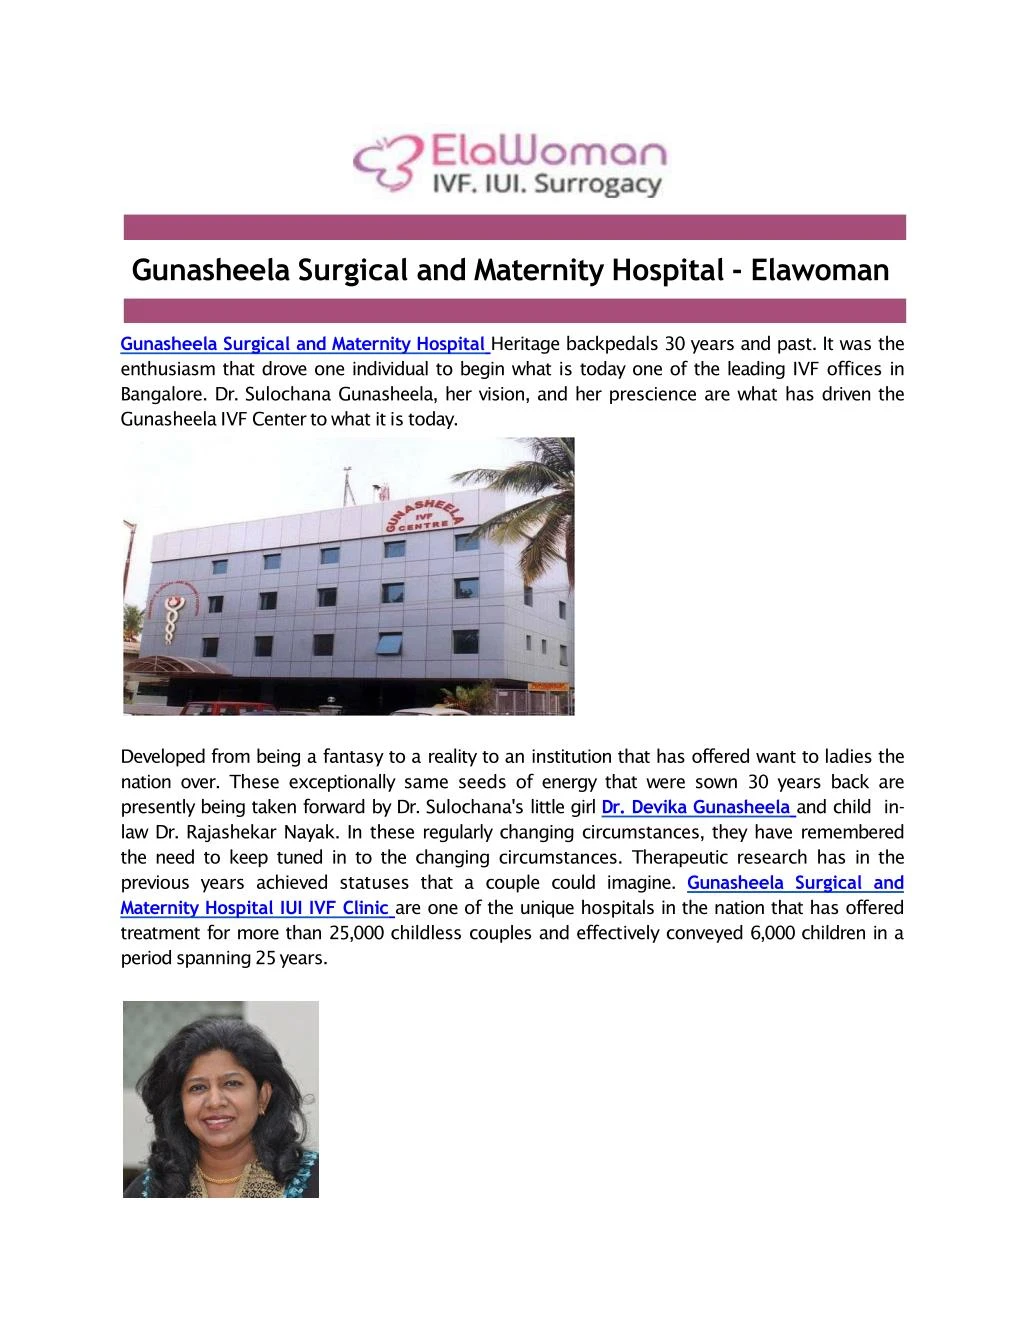 gunasheela surgical and maternity hospital